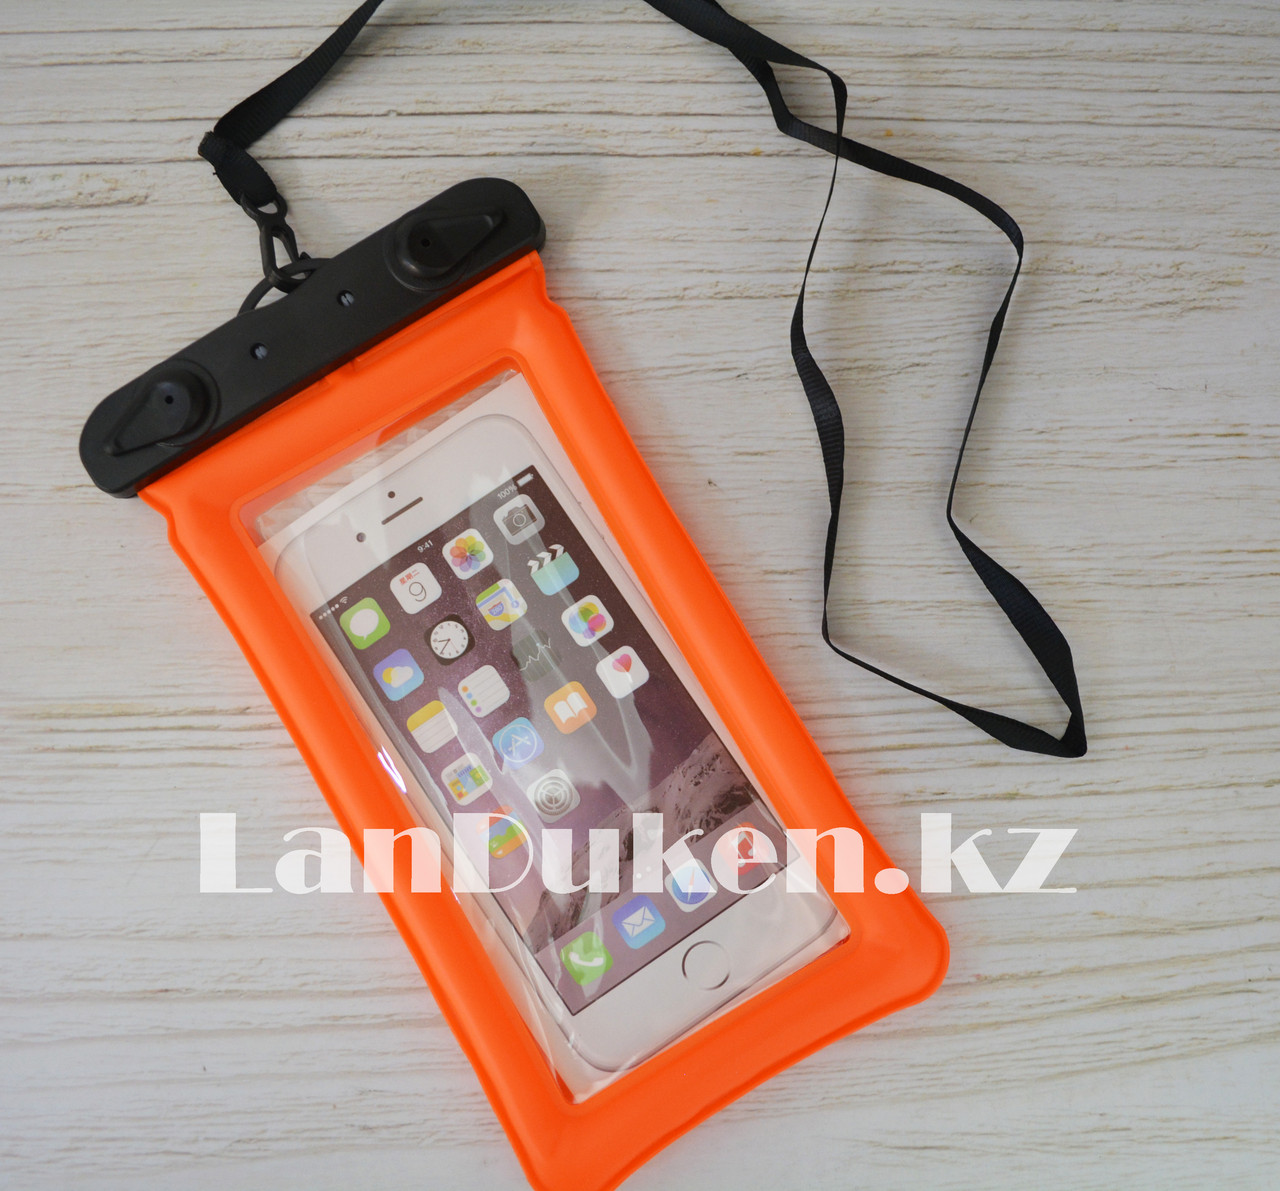 Водонепроницаемый чехол для телефона (оранжевый), фото 1